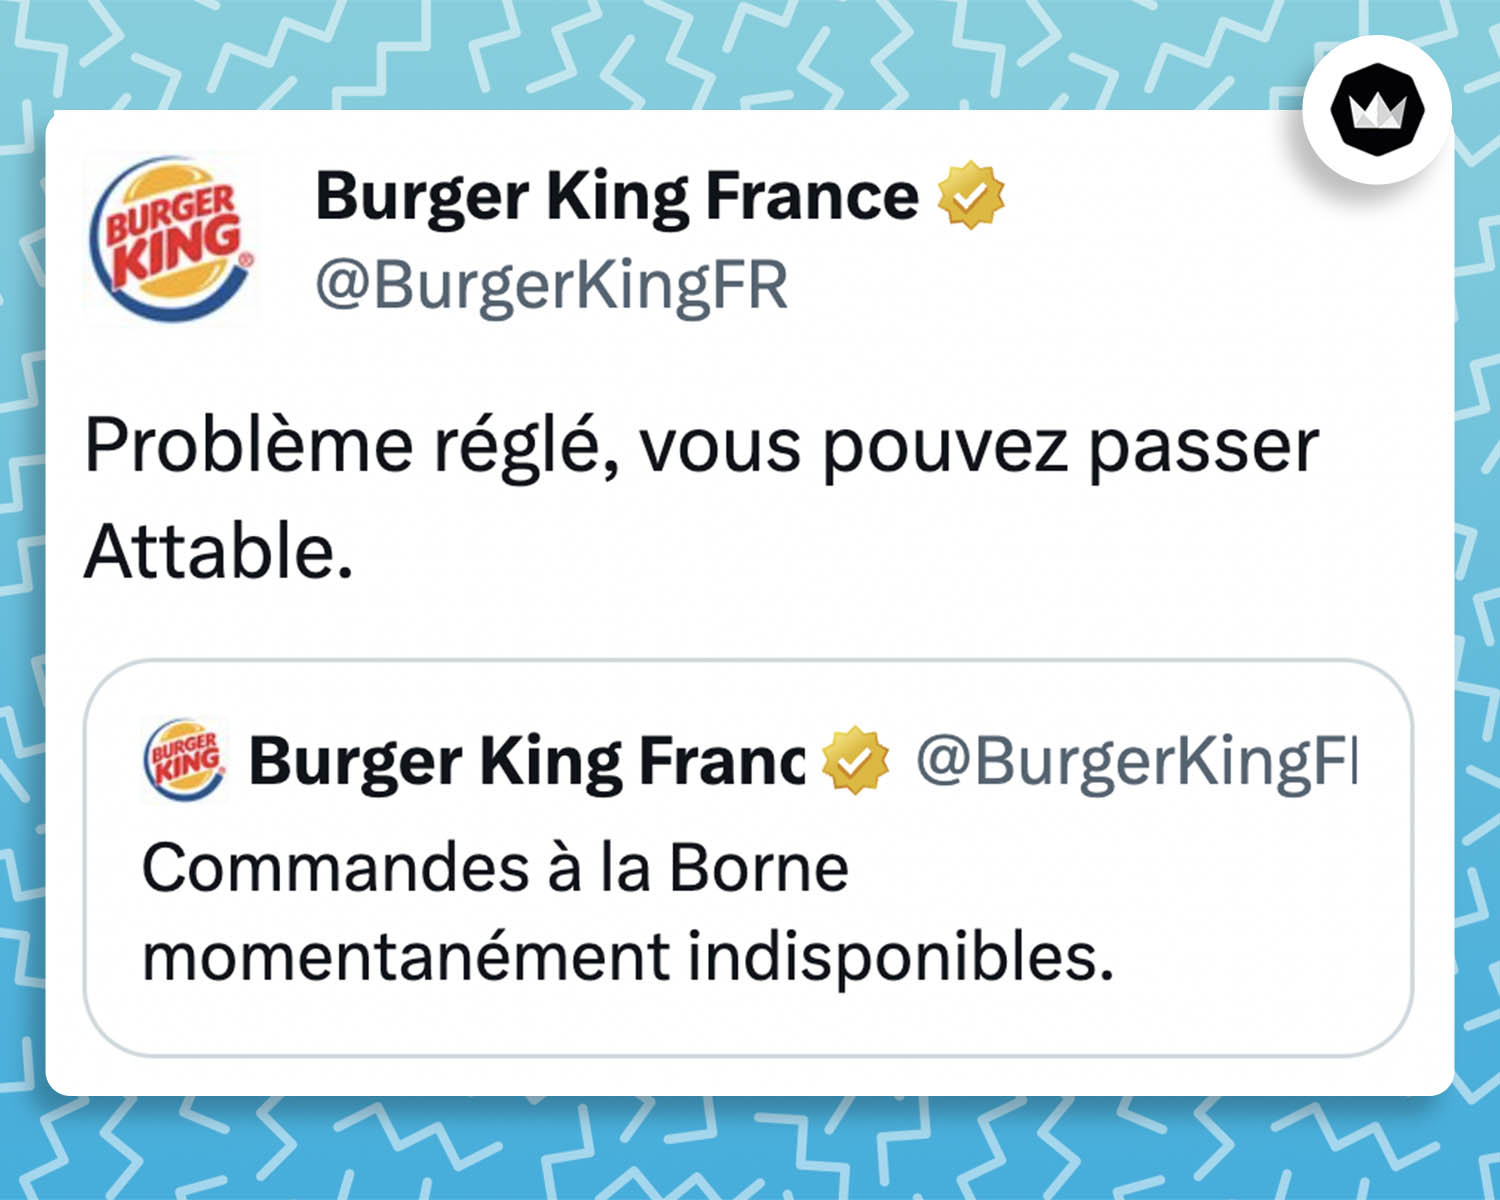 Tweet de Burger King : 
"Problème réglé, vous pouvez passer Attable"

Il s'agit d'une réponse à ce tweet provenant du même compte (Berger King) : 
"Commandes à la Borne momentanément indisponibles."